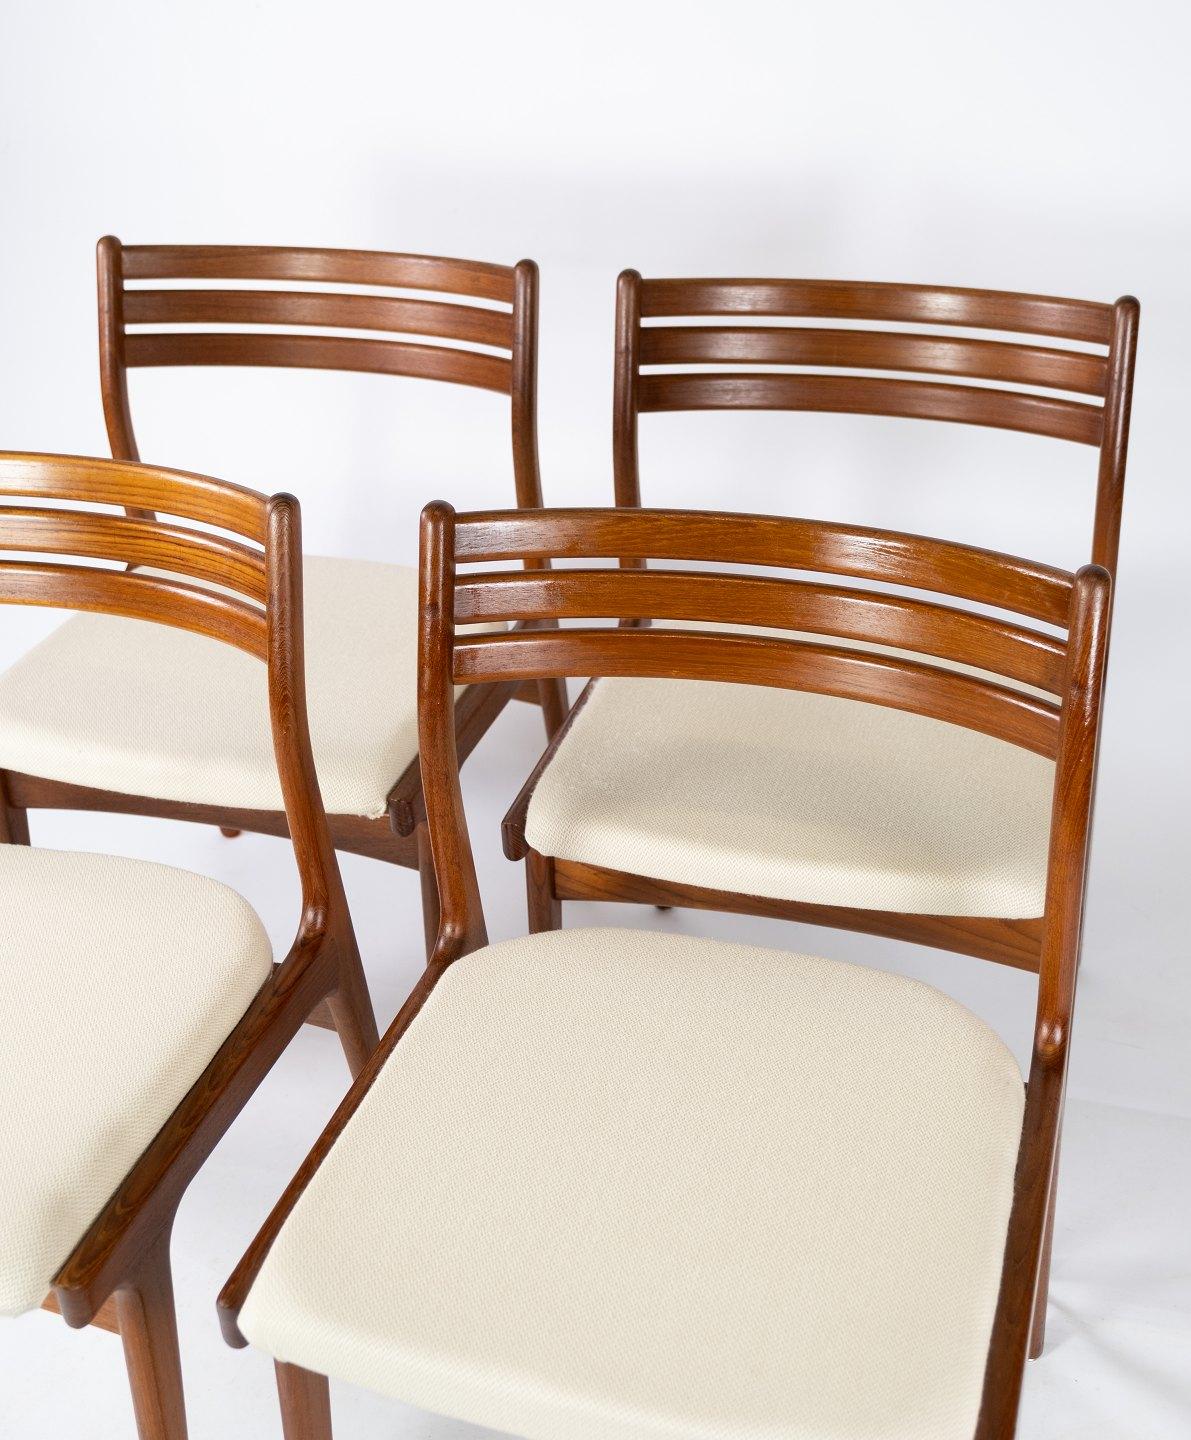 
Cet ensemble de quatre chaises de salle à manger incarne la quintessence du design scandinave des années 1960. Fabriquées en bois de teck, ces chaises arborent une teinte chaude et accueillante, caractéristique de l'approche naturaliste de l'époque